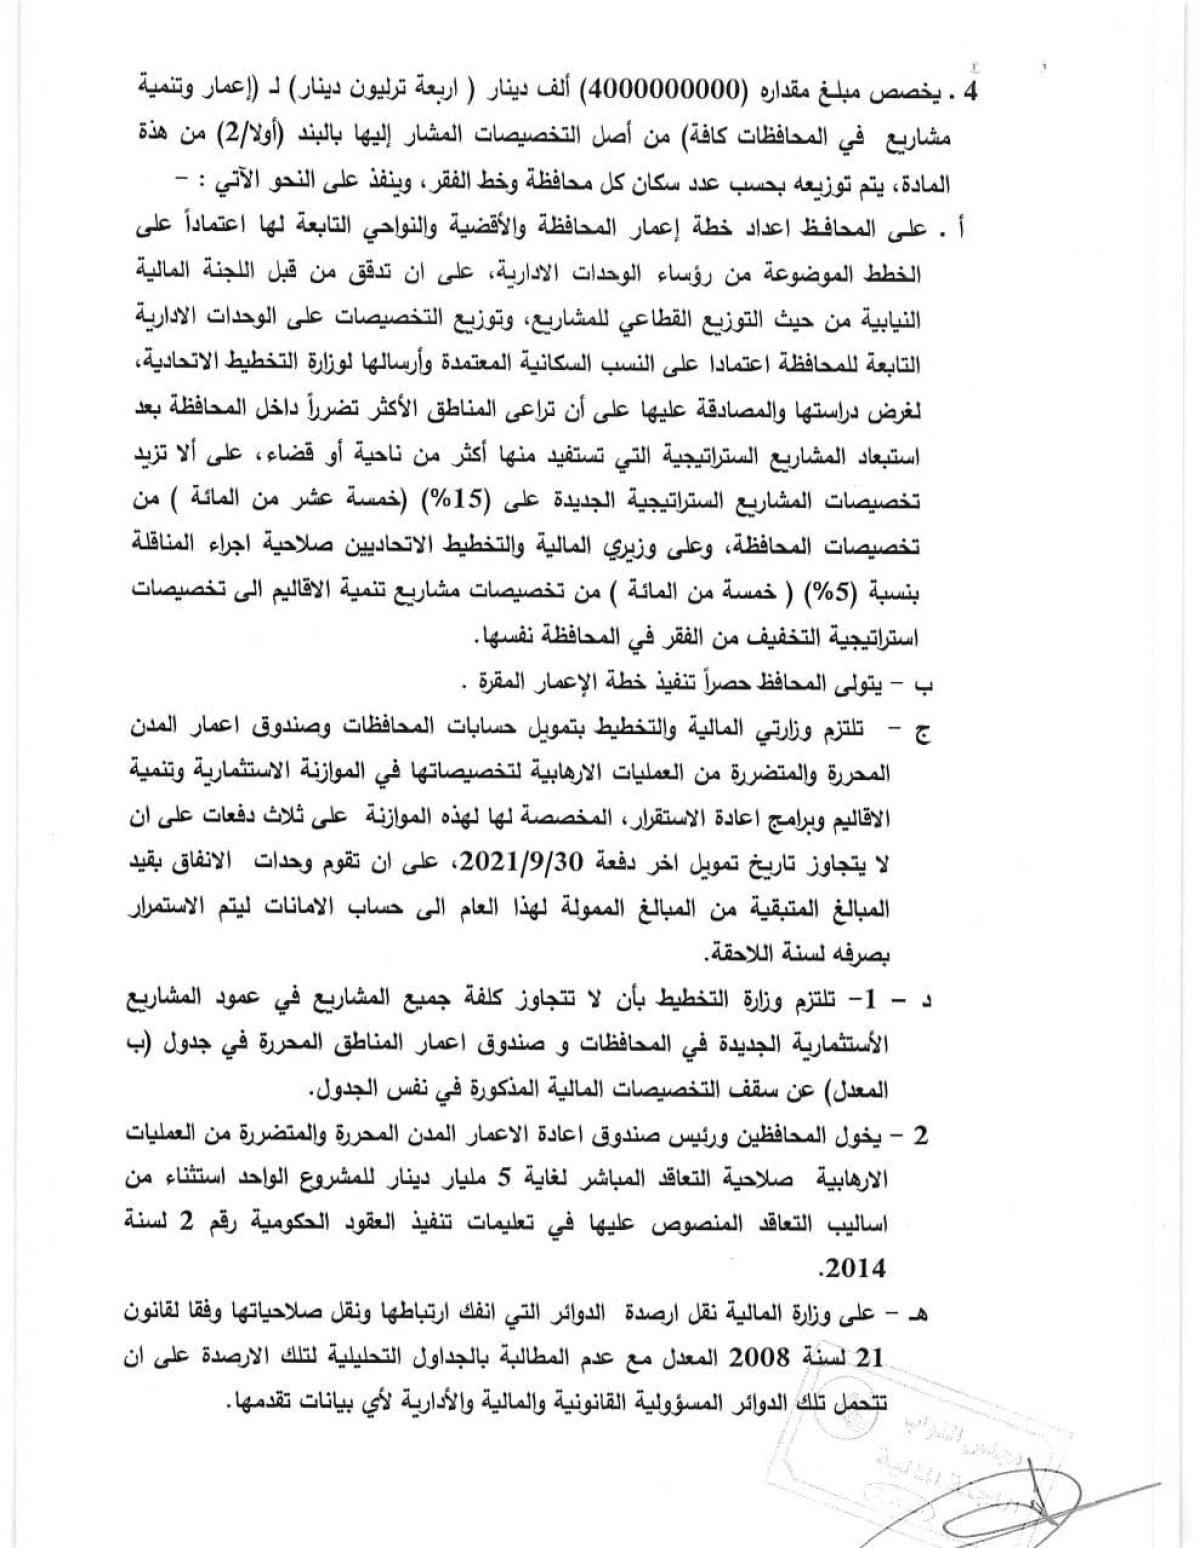 صحيفة العراق تنشر نص قانون الموازنة